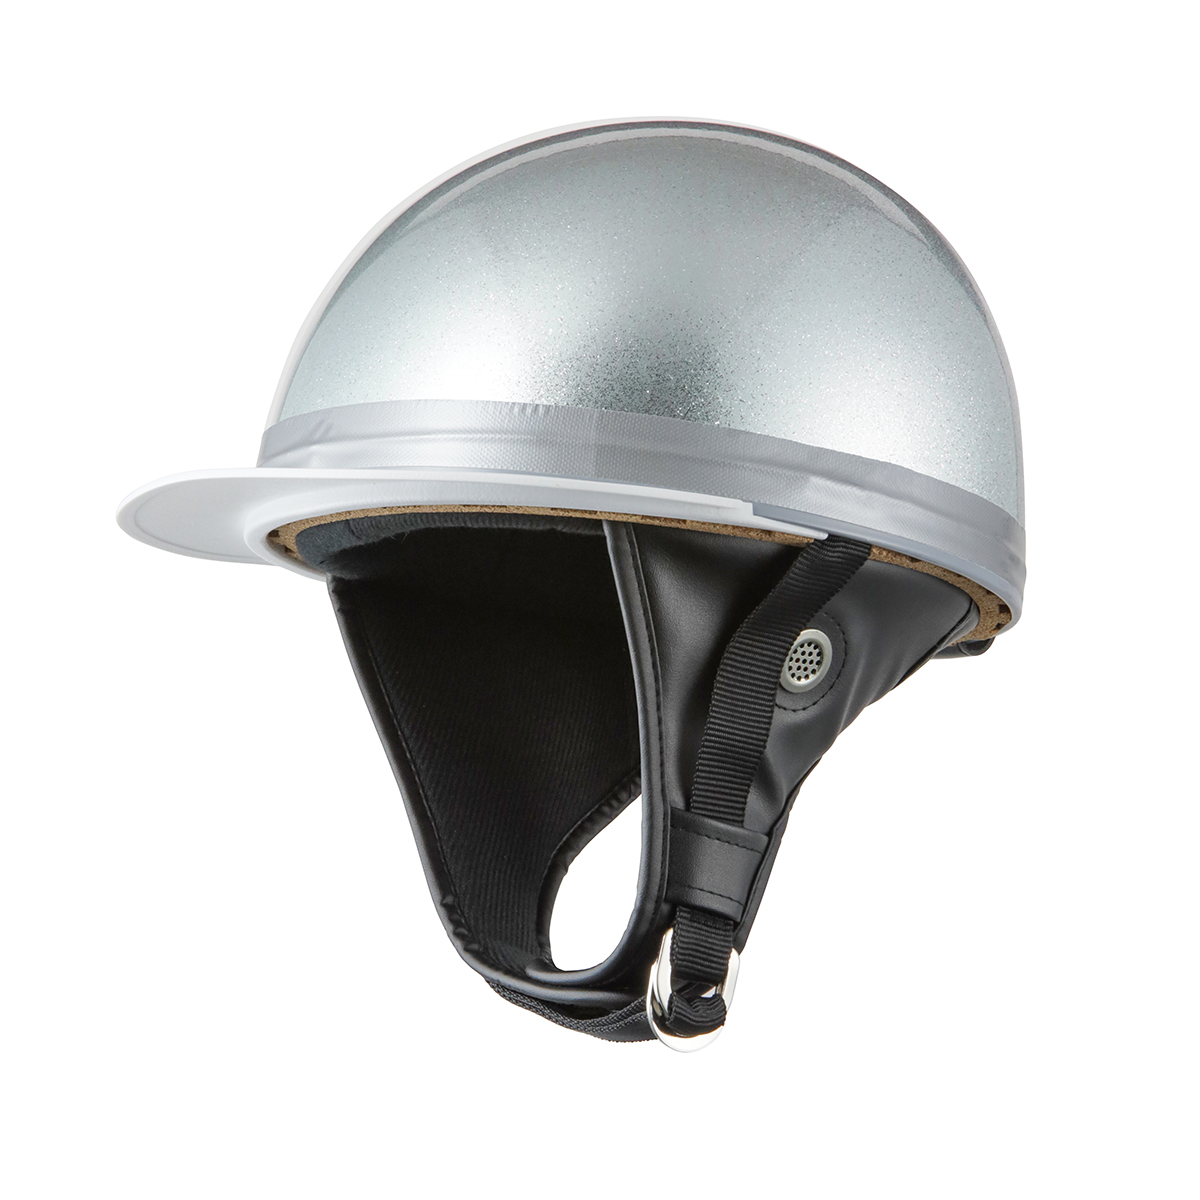 バイクヘルメット バイク ヘルメット コルク半キャップ 半キャップ SG規格適合 PSCマーク取得 防災対策